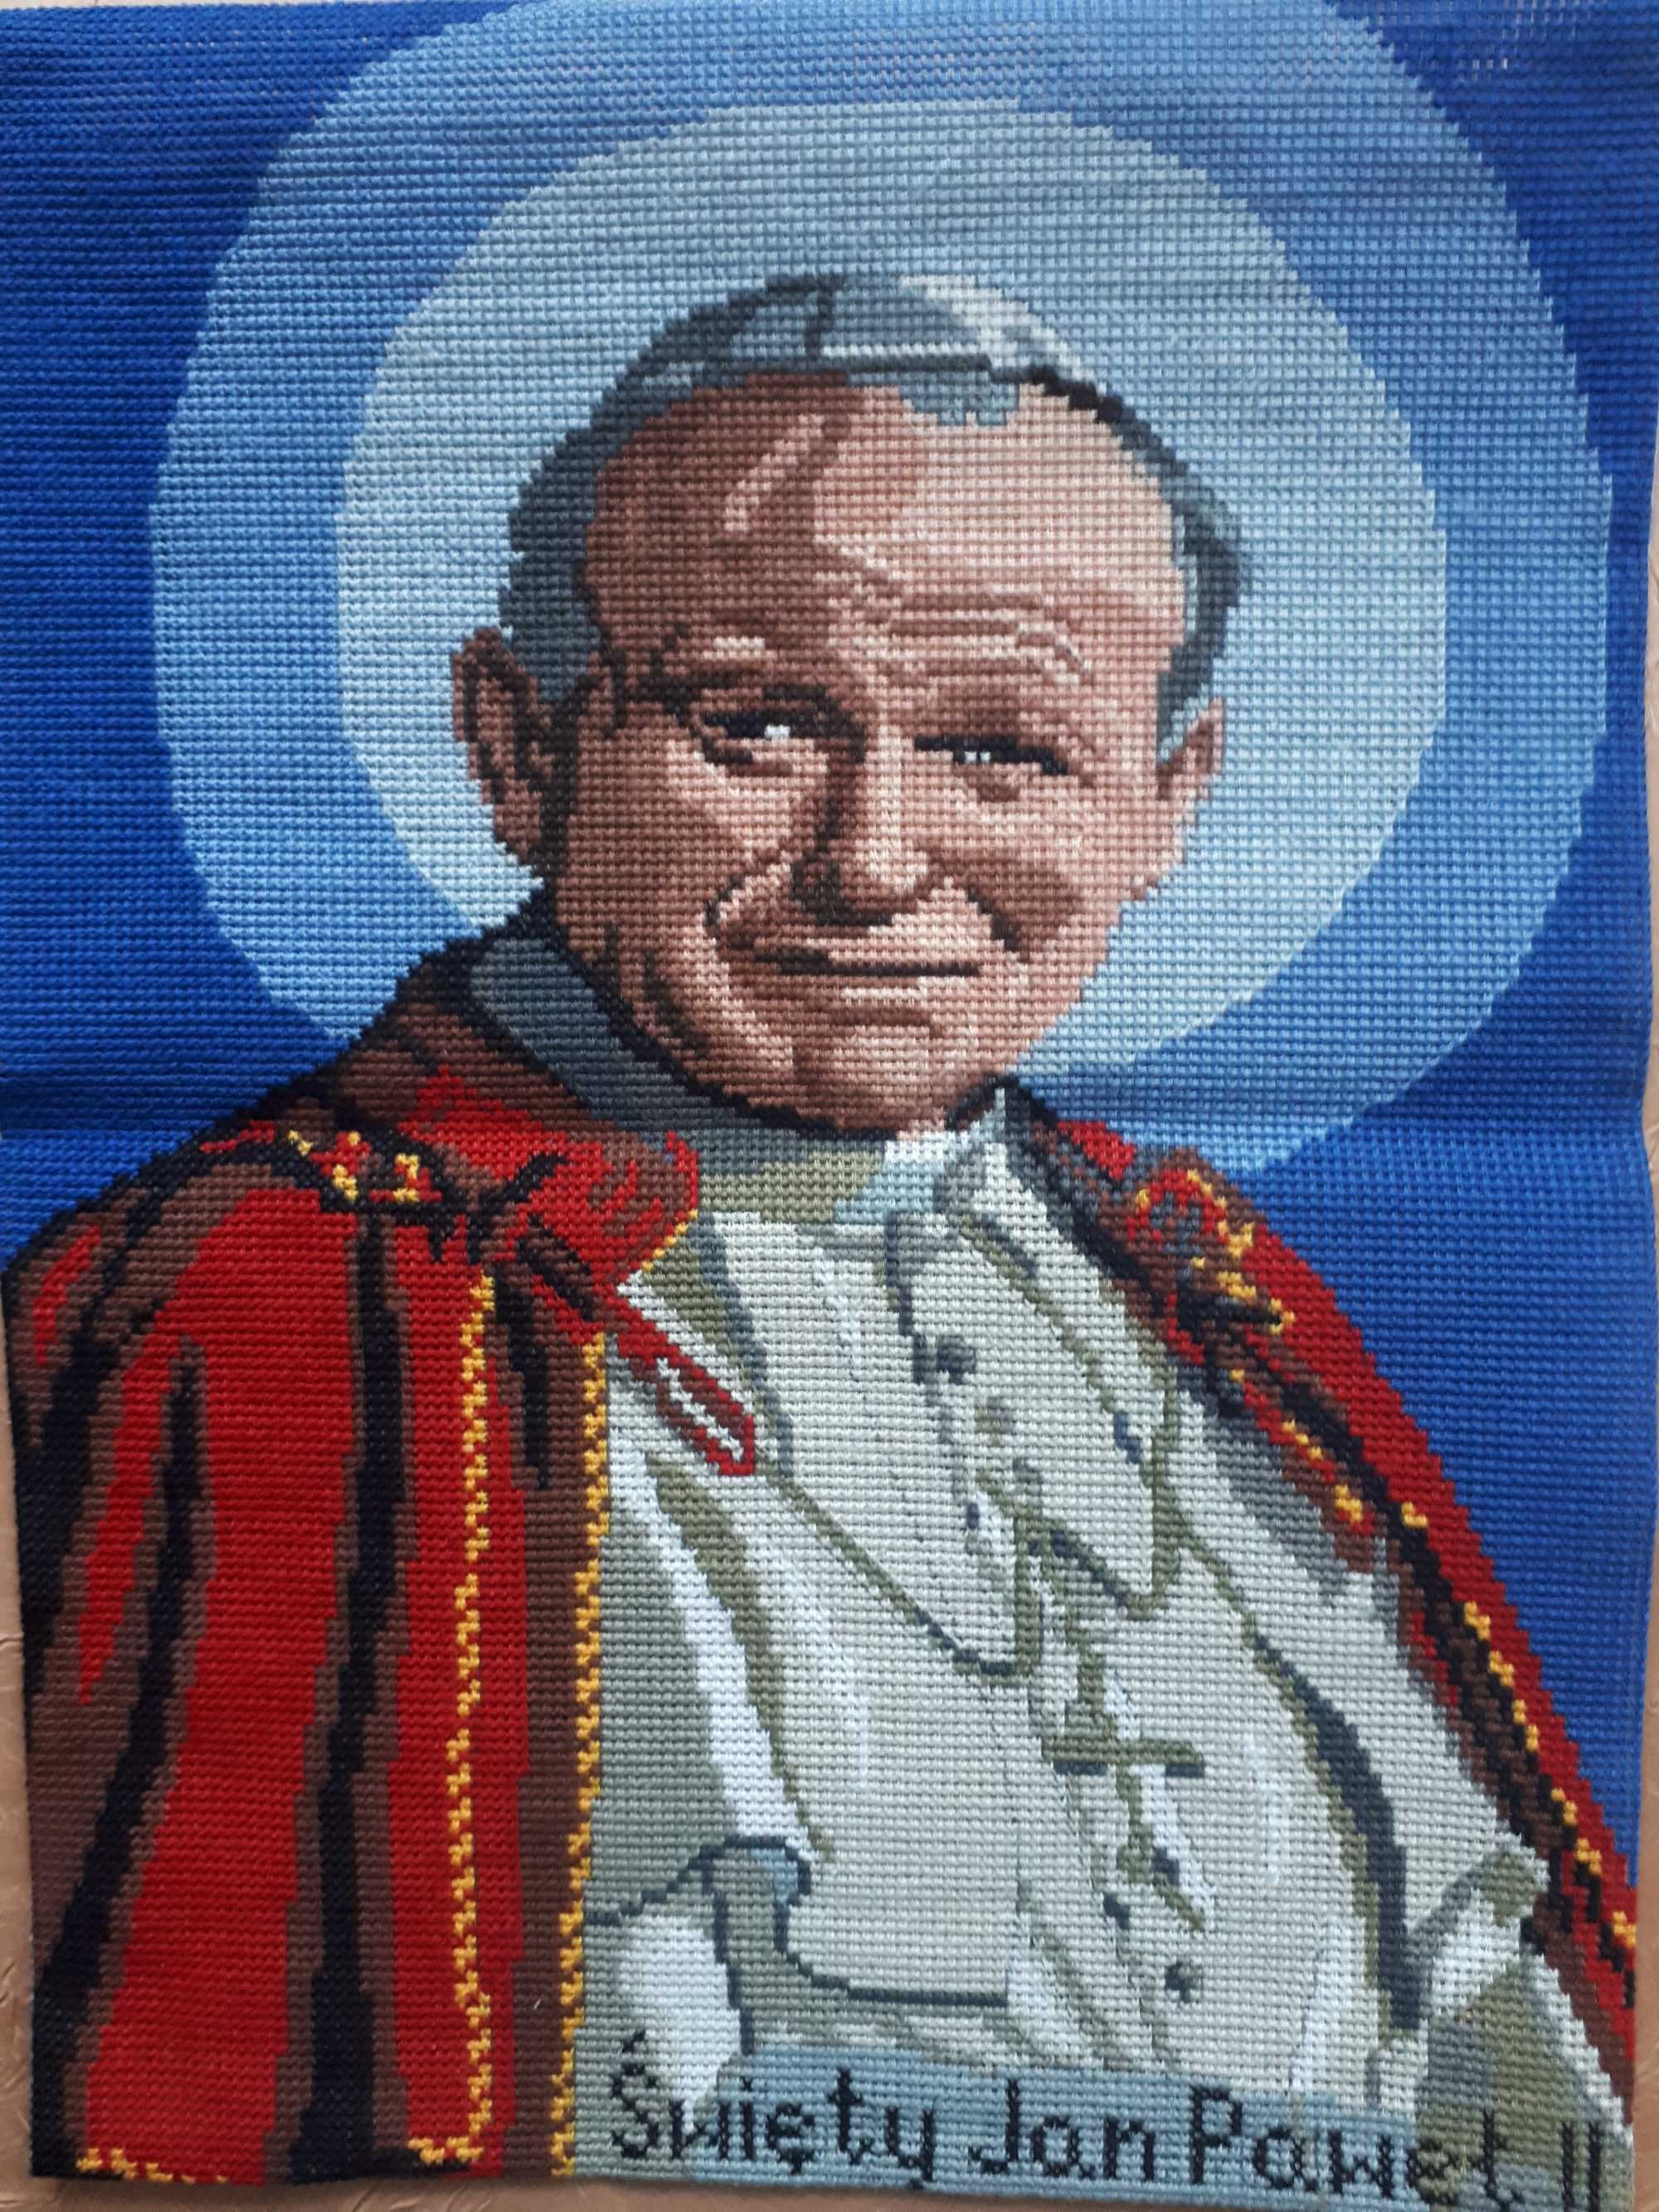 Obraz Święty Jan Paweł II-  30 x 40 cm, haft krzyżykowy